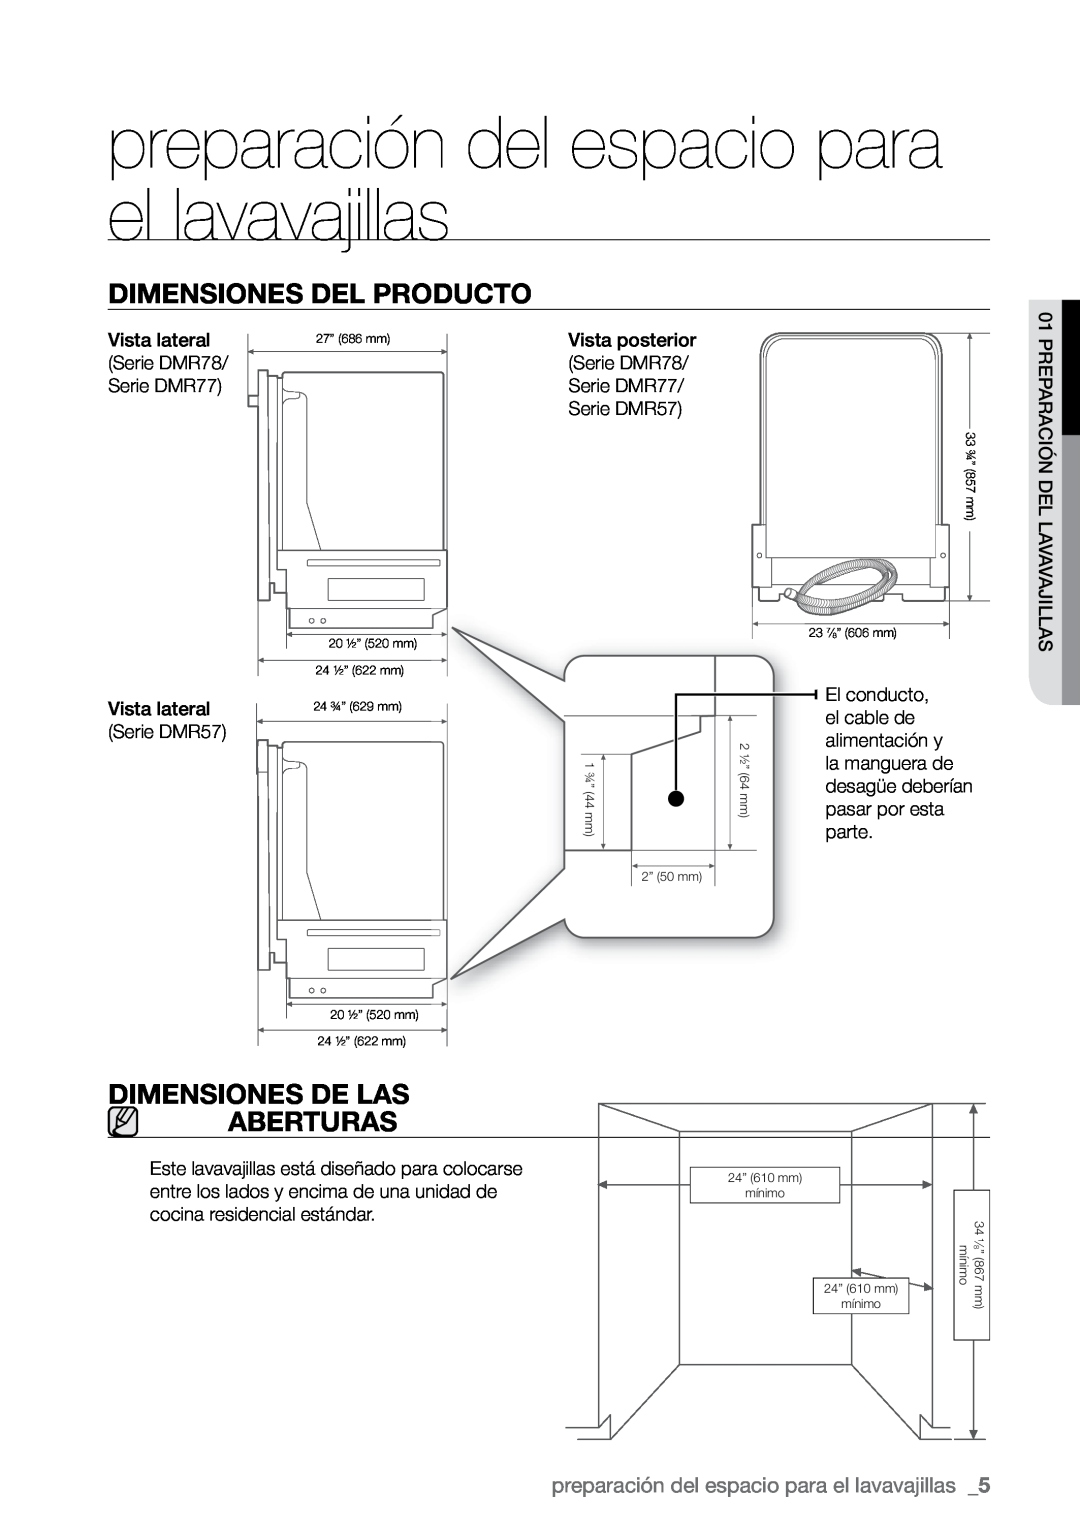 Samsung DMR77, DMR78 preparación del espacio para el lavavajillas, Dimensiones del producto, Dimensiones de las aberturas 